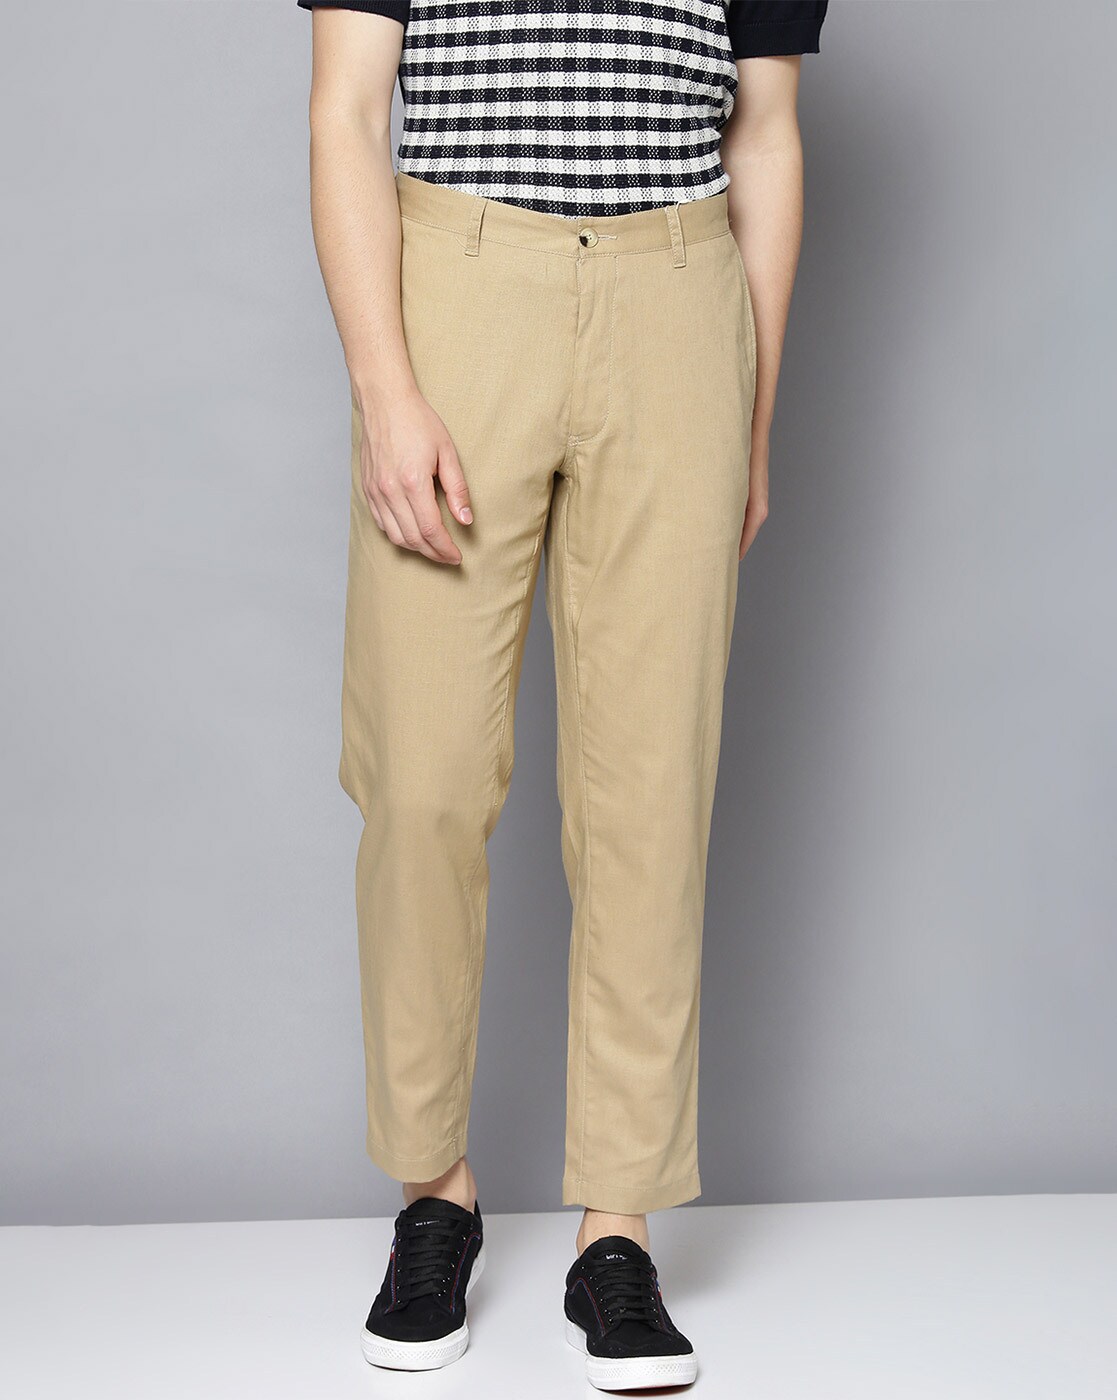 Buy Blue Trousers  Pants for Men by Ben Sherman Online  Ajiocom